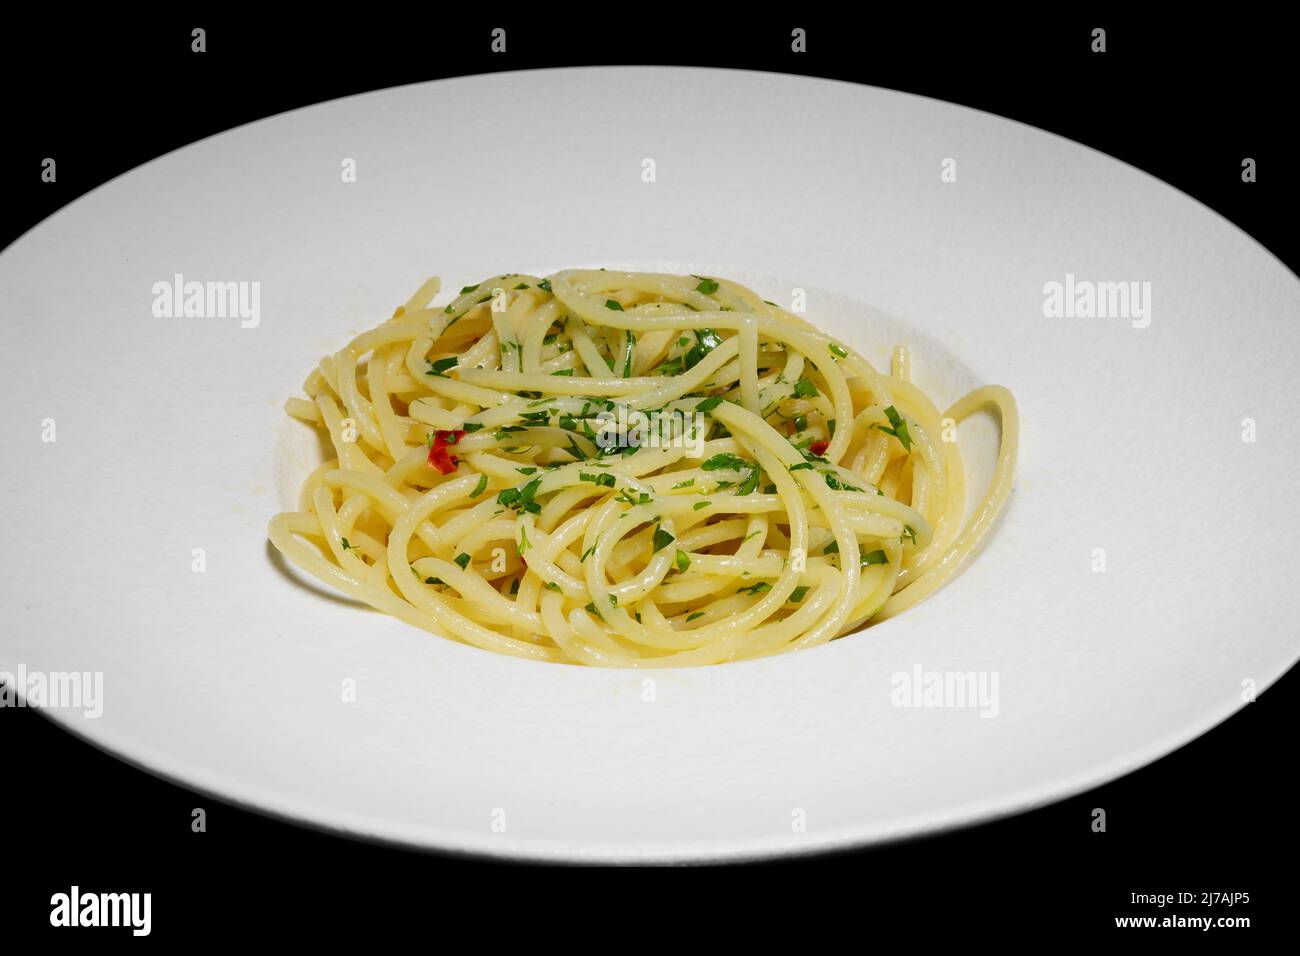 Spaghetti à l'ail, à l'huile d'olive, au persil et au poivron rouge (italien : spaghetti aglio olio e peperoncino); est un plat traditionnel italien. Banque D'Images